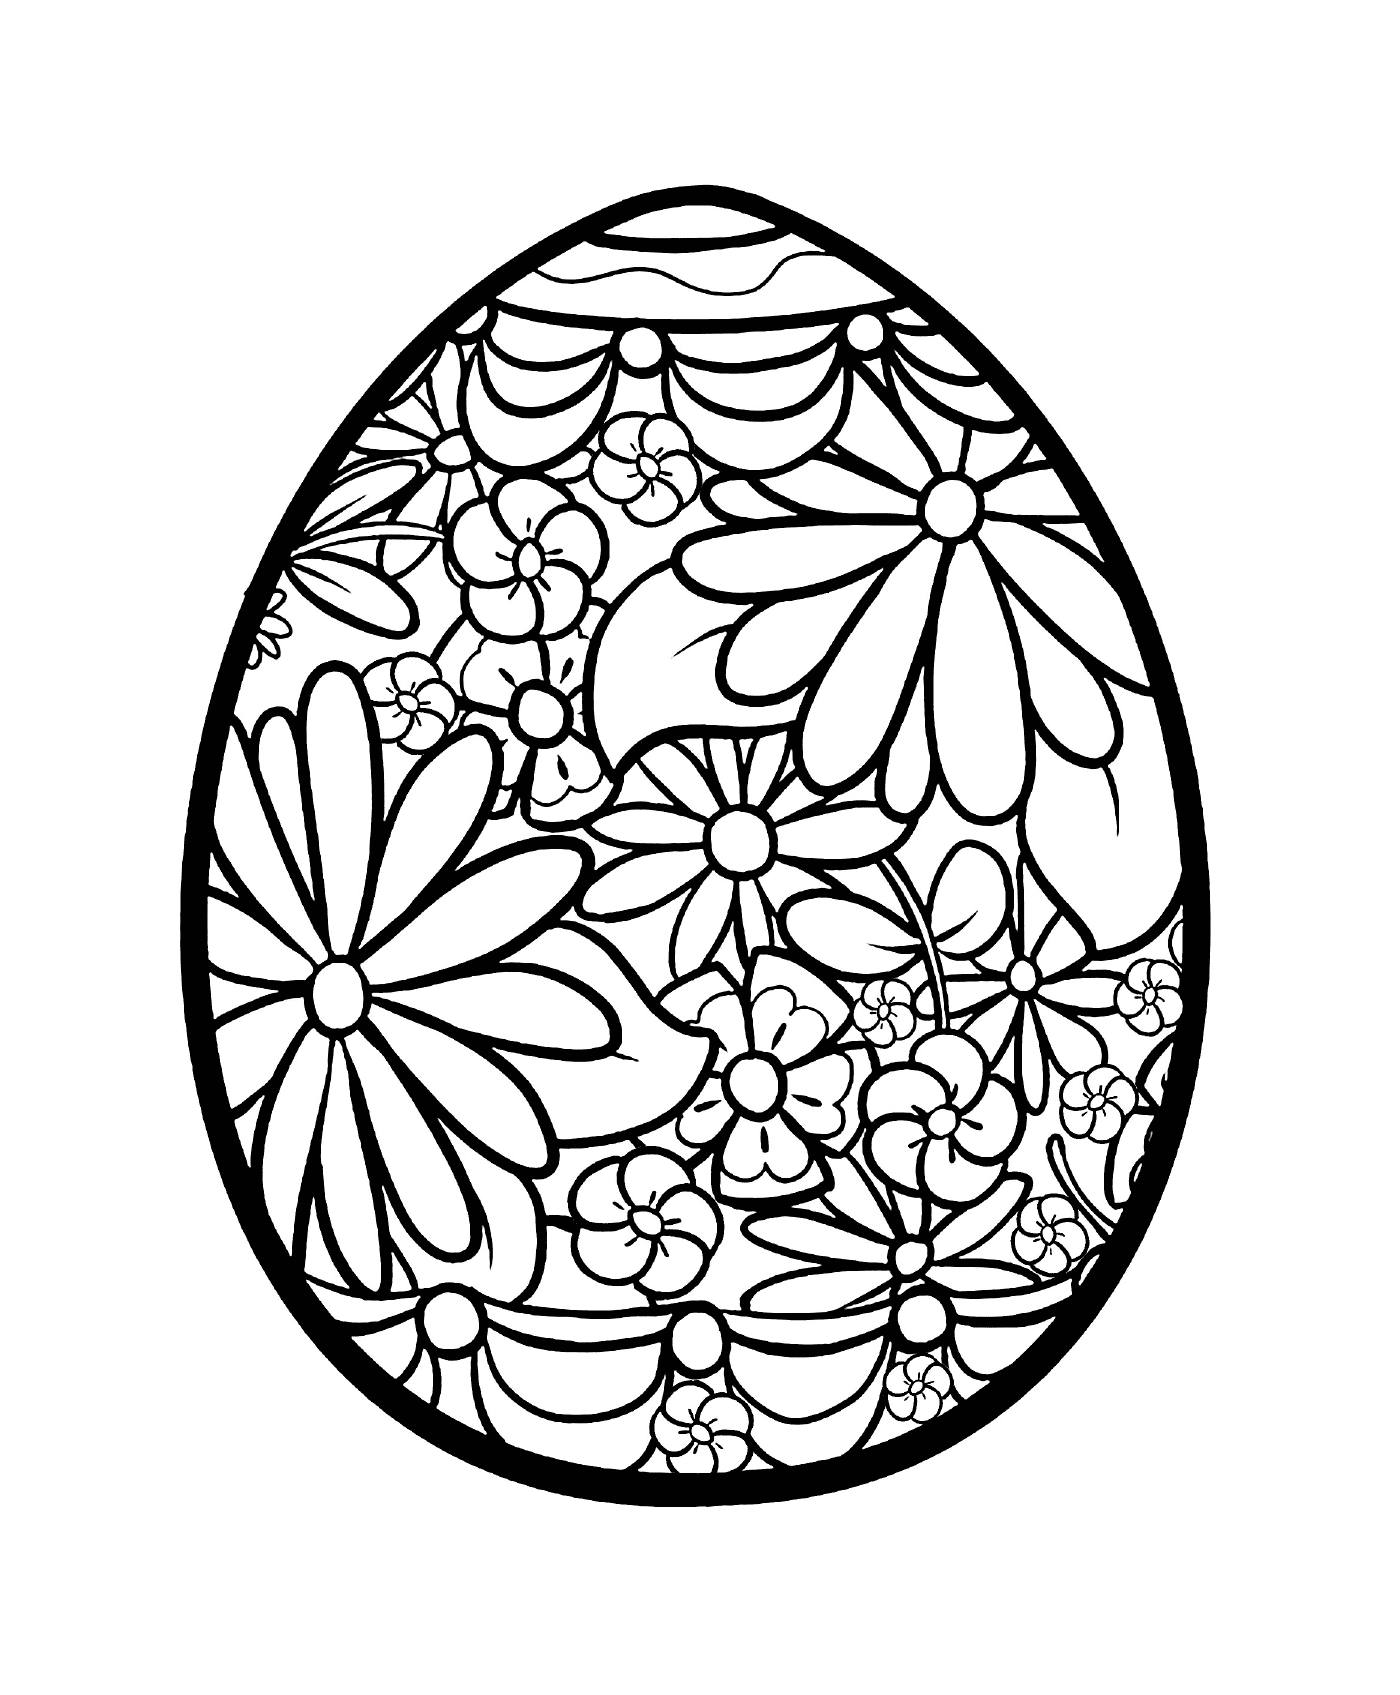  Пасхальное яйцо 2019 года с цветами 